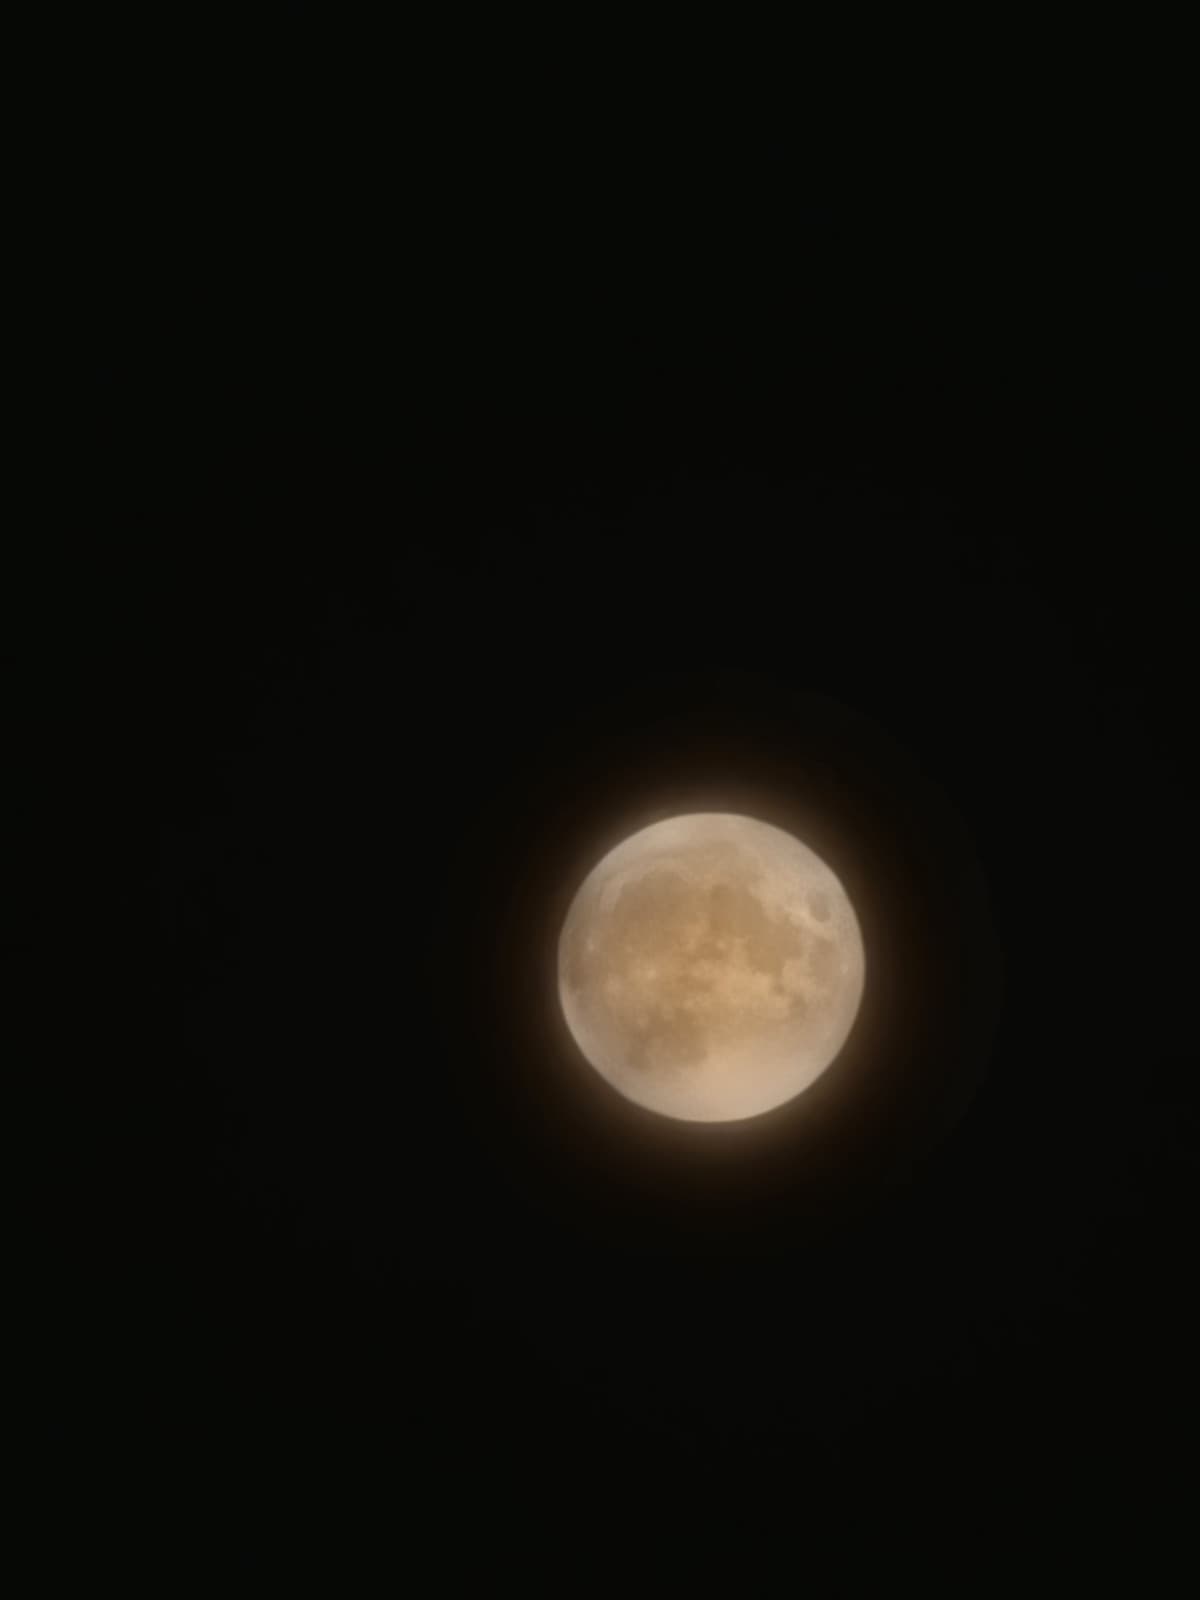 Leggevo dai segreti che qualcuno voleva fare una foto alla luna, vi ho fatto un favore